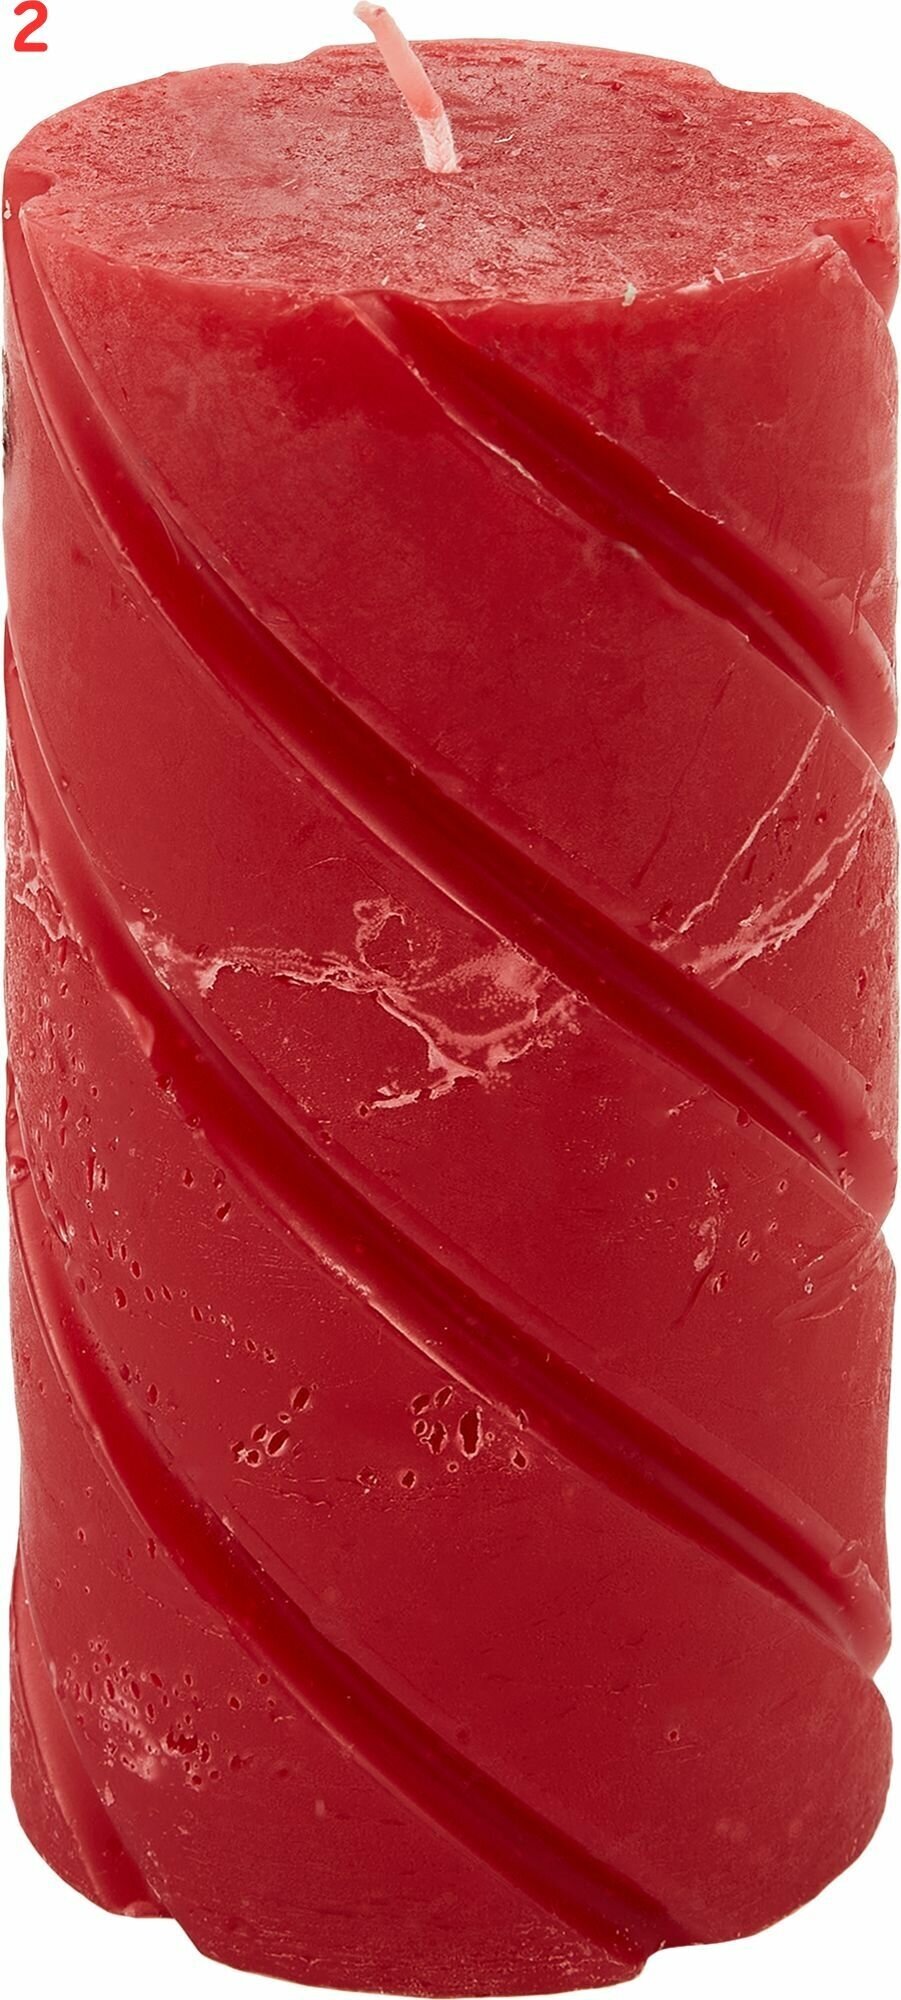 Свеча-столбик Рустик цвет красный 70х150 мм (2 шт.)